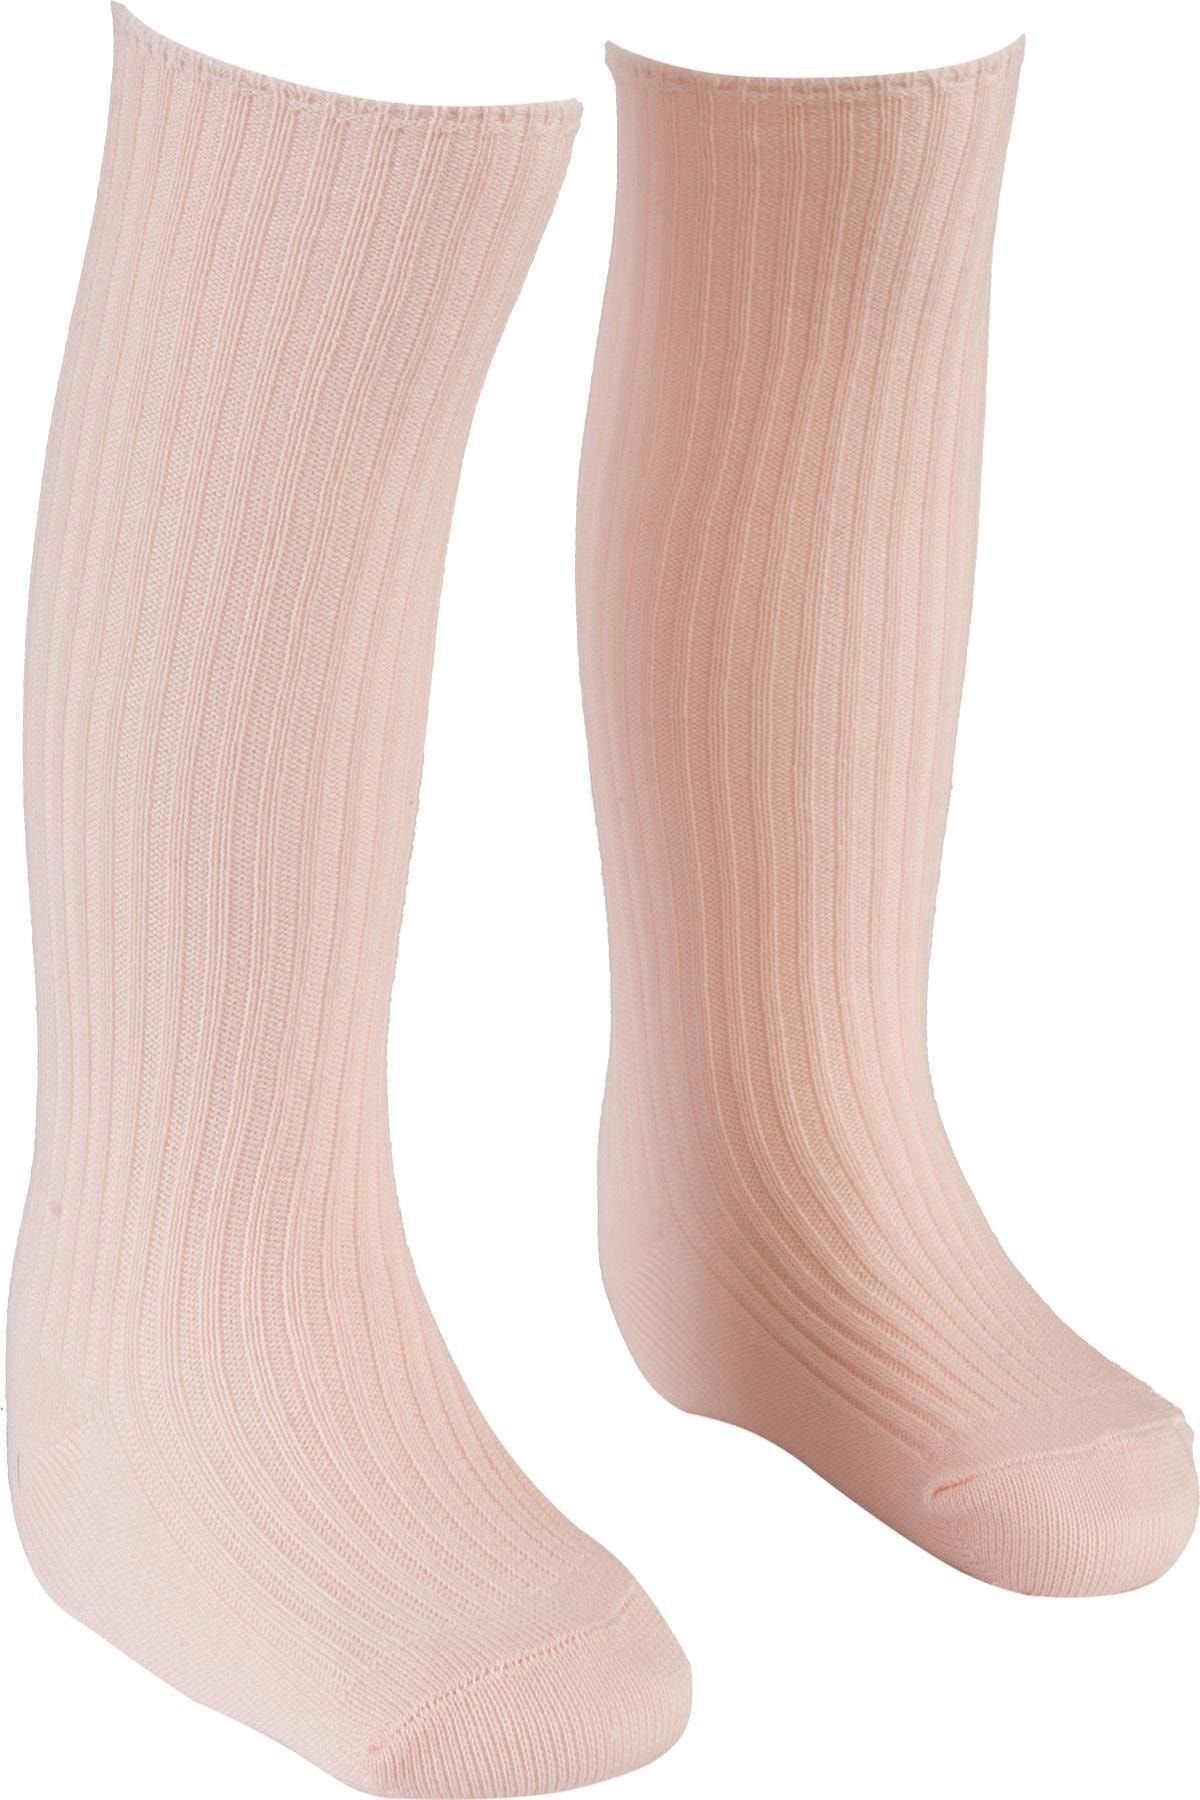 BEBEĞİME ÇORAP Dizaltı Çorap Yavruağzı Renk 2-3 Yaş Kız-erkek Bebek / Kız- Erkek Çocuk